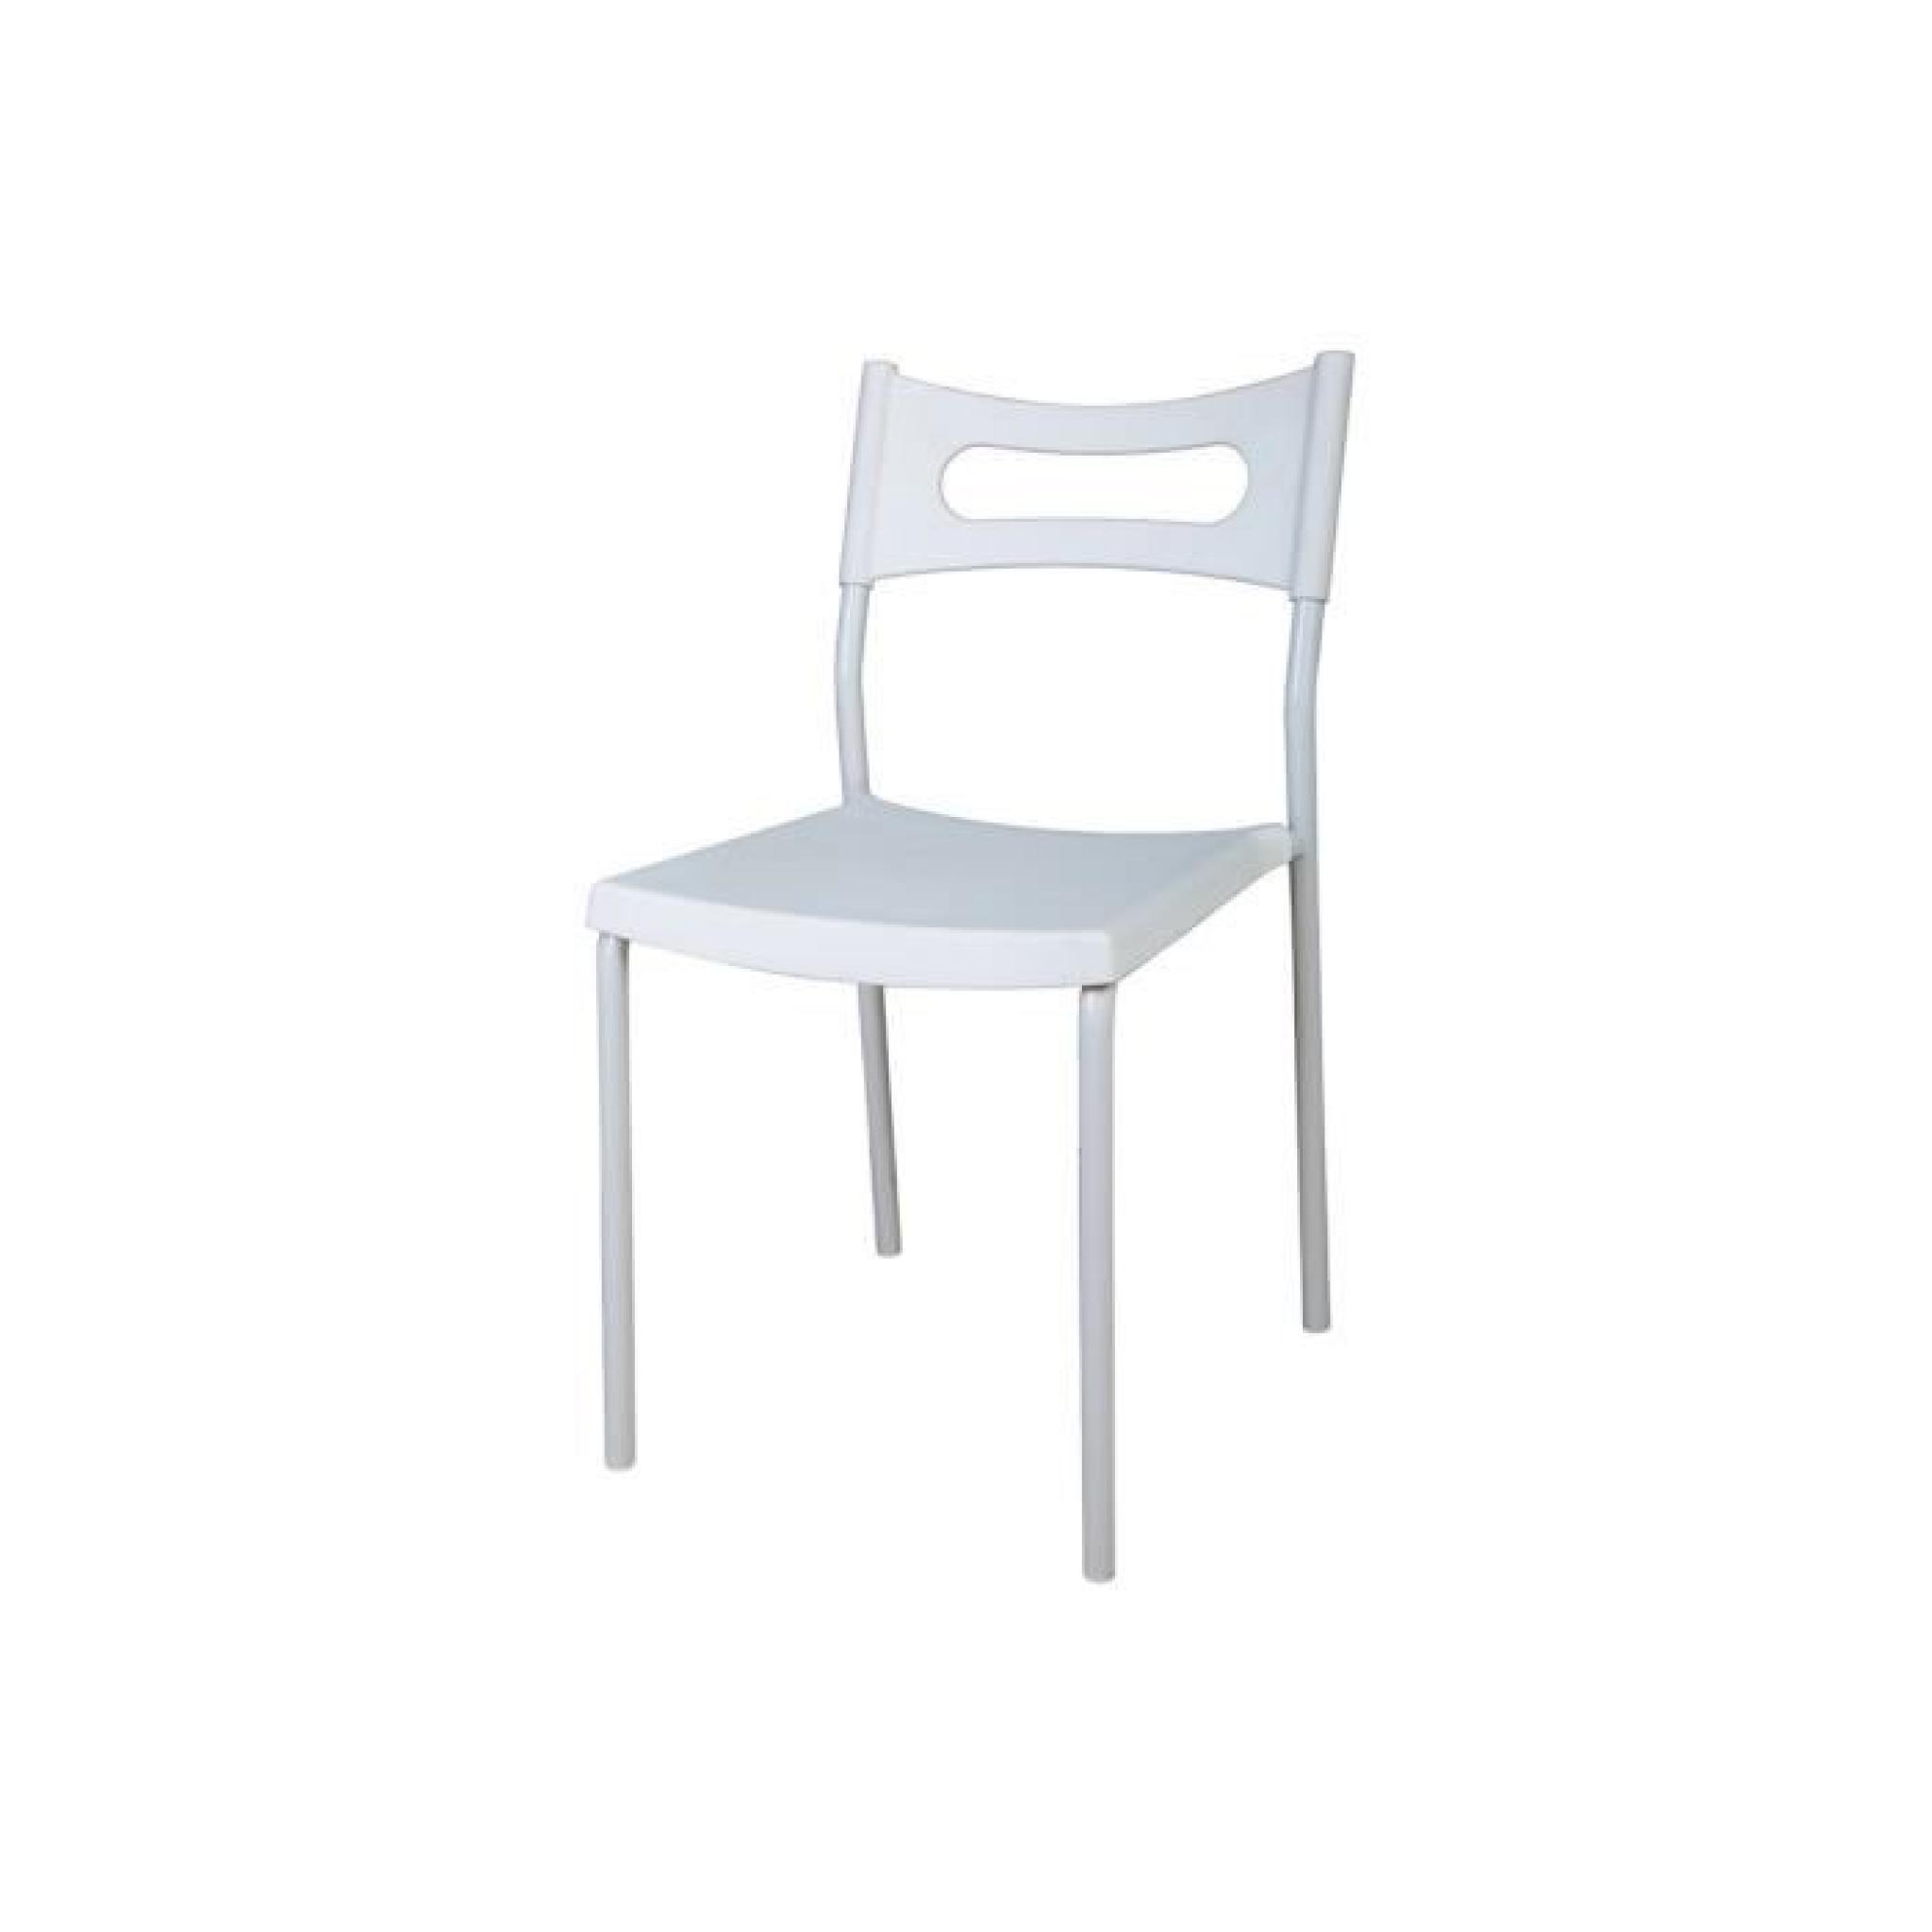 Lot de 4 chaises empilables blanches / Polypropylène CAPIATA